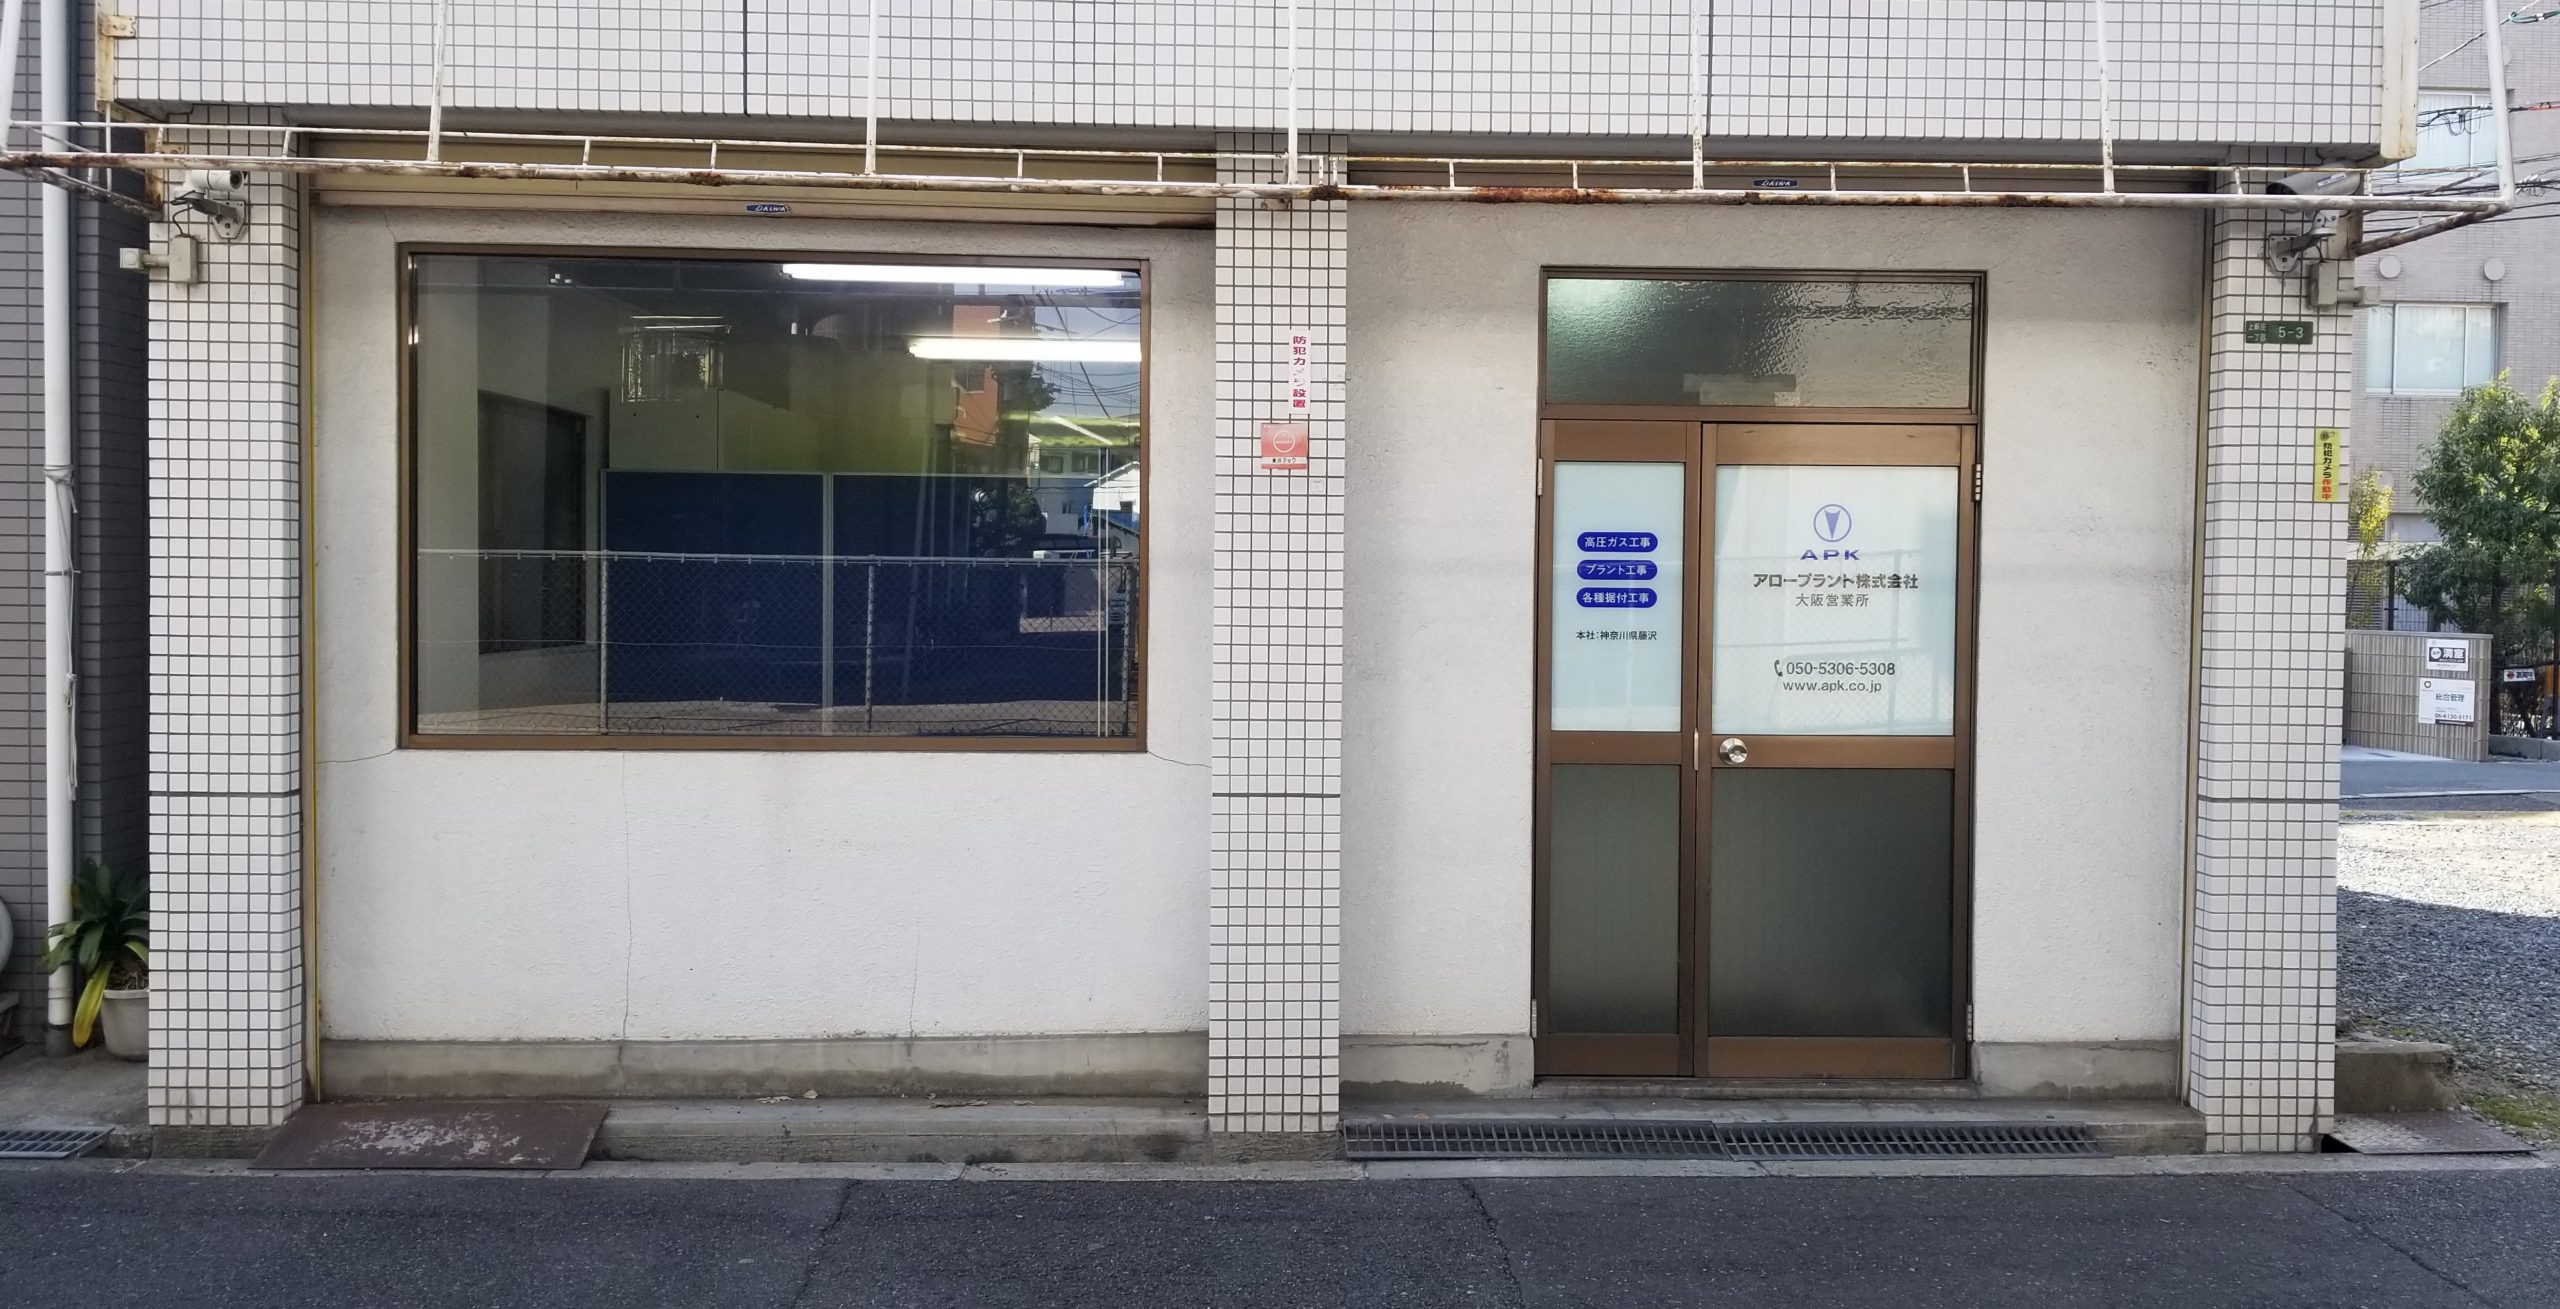 関西営業所閉所並びに大阪営業所開所のお知らせ